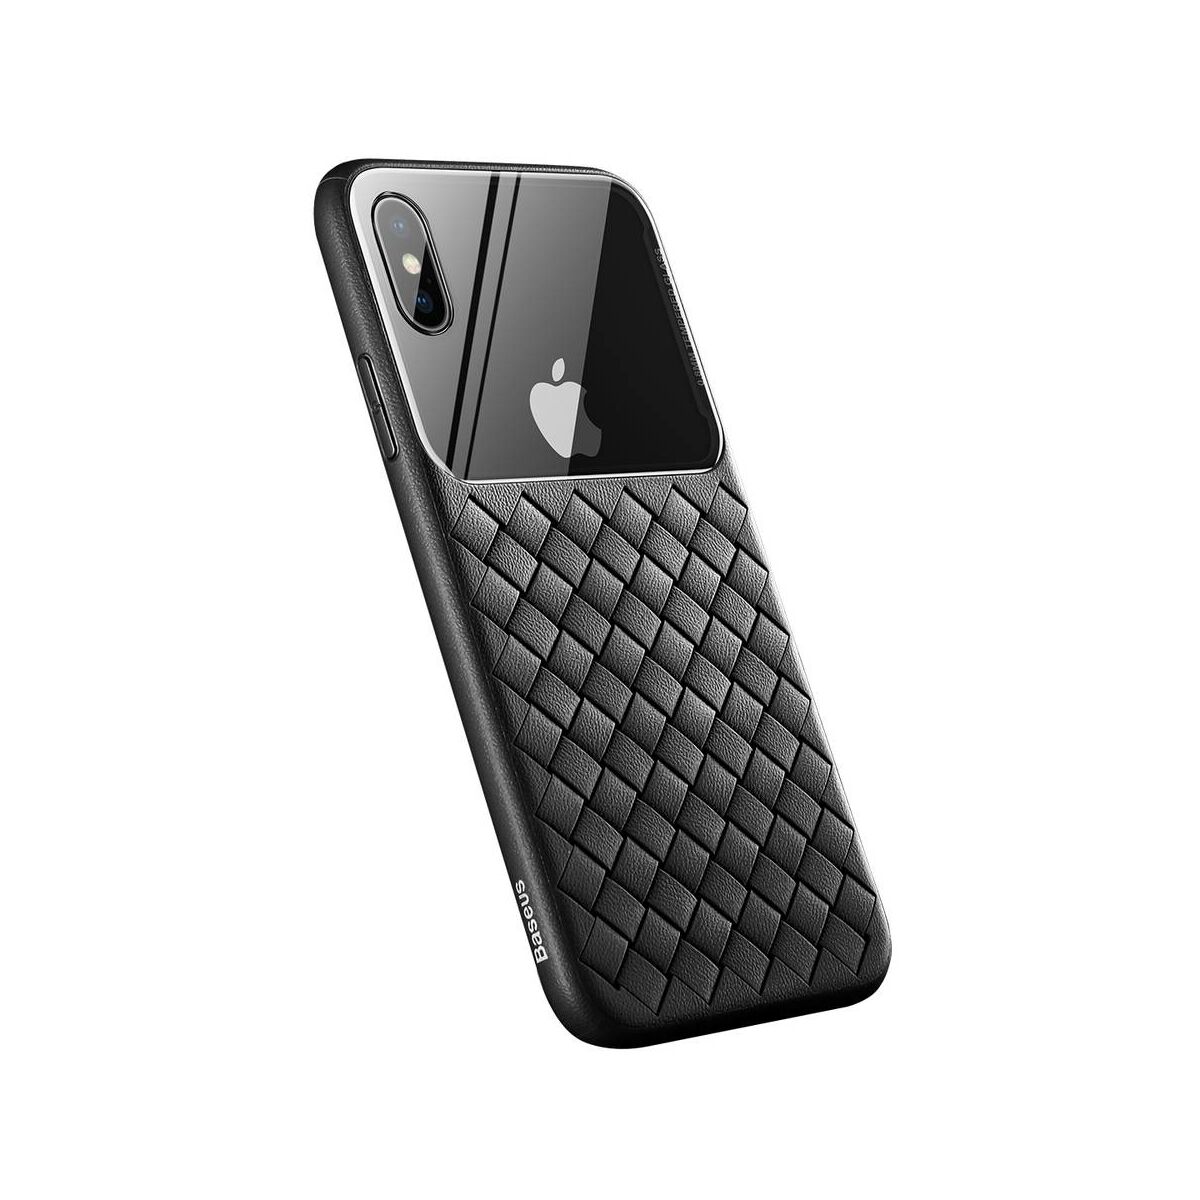 Kép 2/10 - Baseus iPhone XS Max üveg & tok, BV Weaving, fekete (WIAPIPH65-BL01)